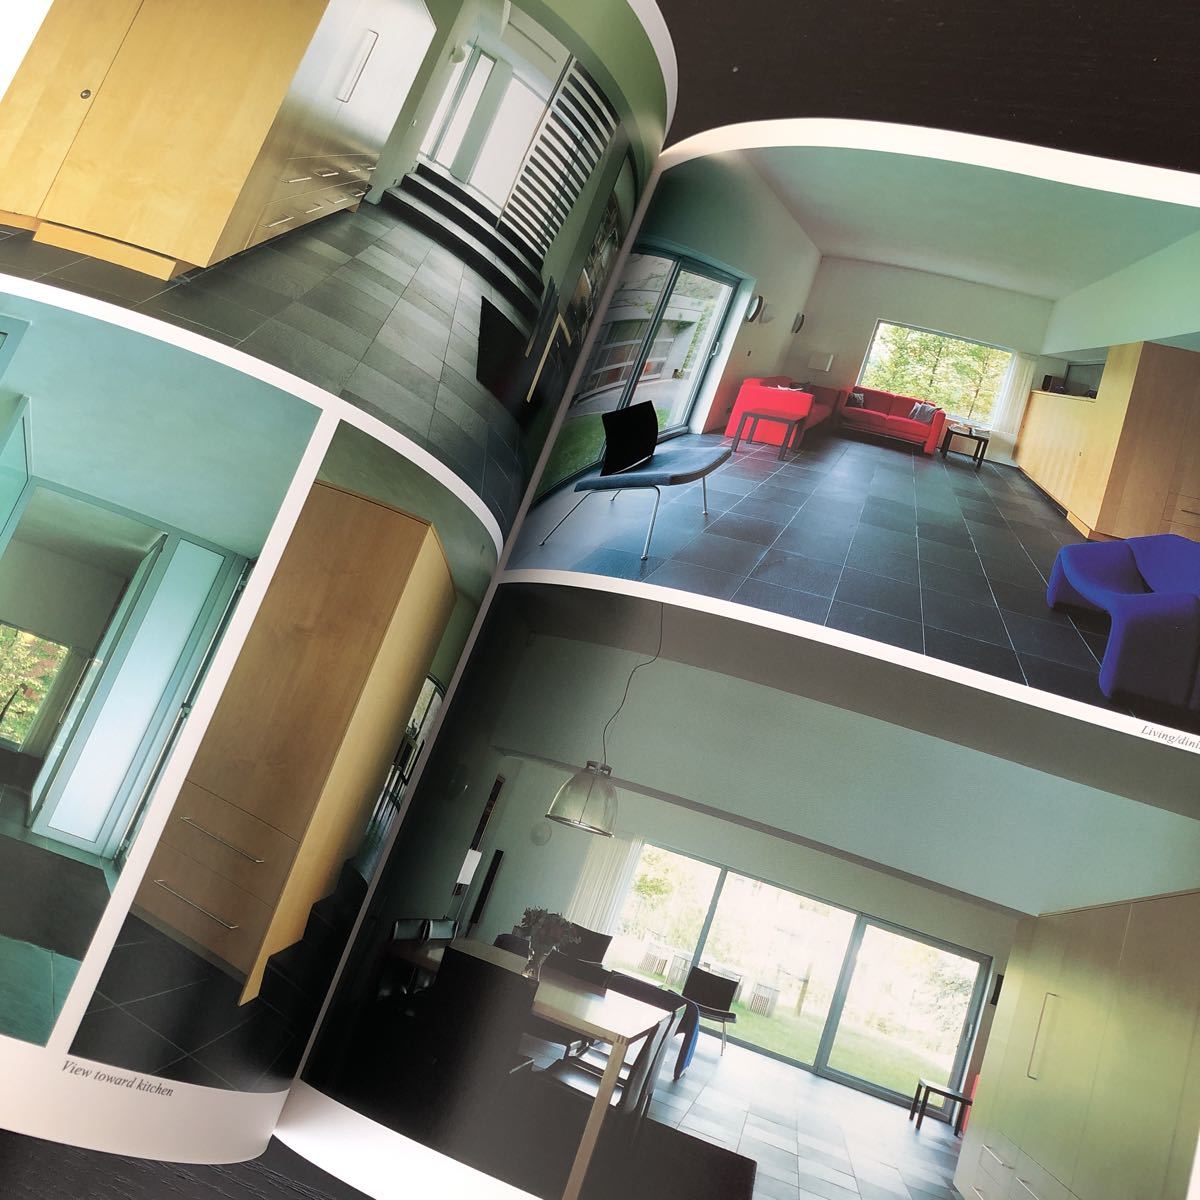 ノ48 GAHOUSES 世界の住宅 2002年10月24日発行 ニ川幸夫 マイホーム デザイン デザイナー 建築 設計図 図面 資料 美術 家 _画像5